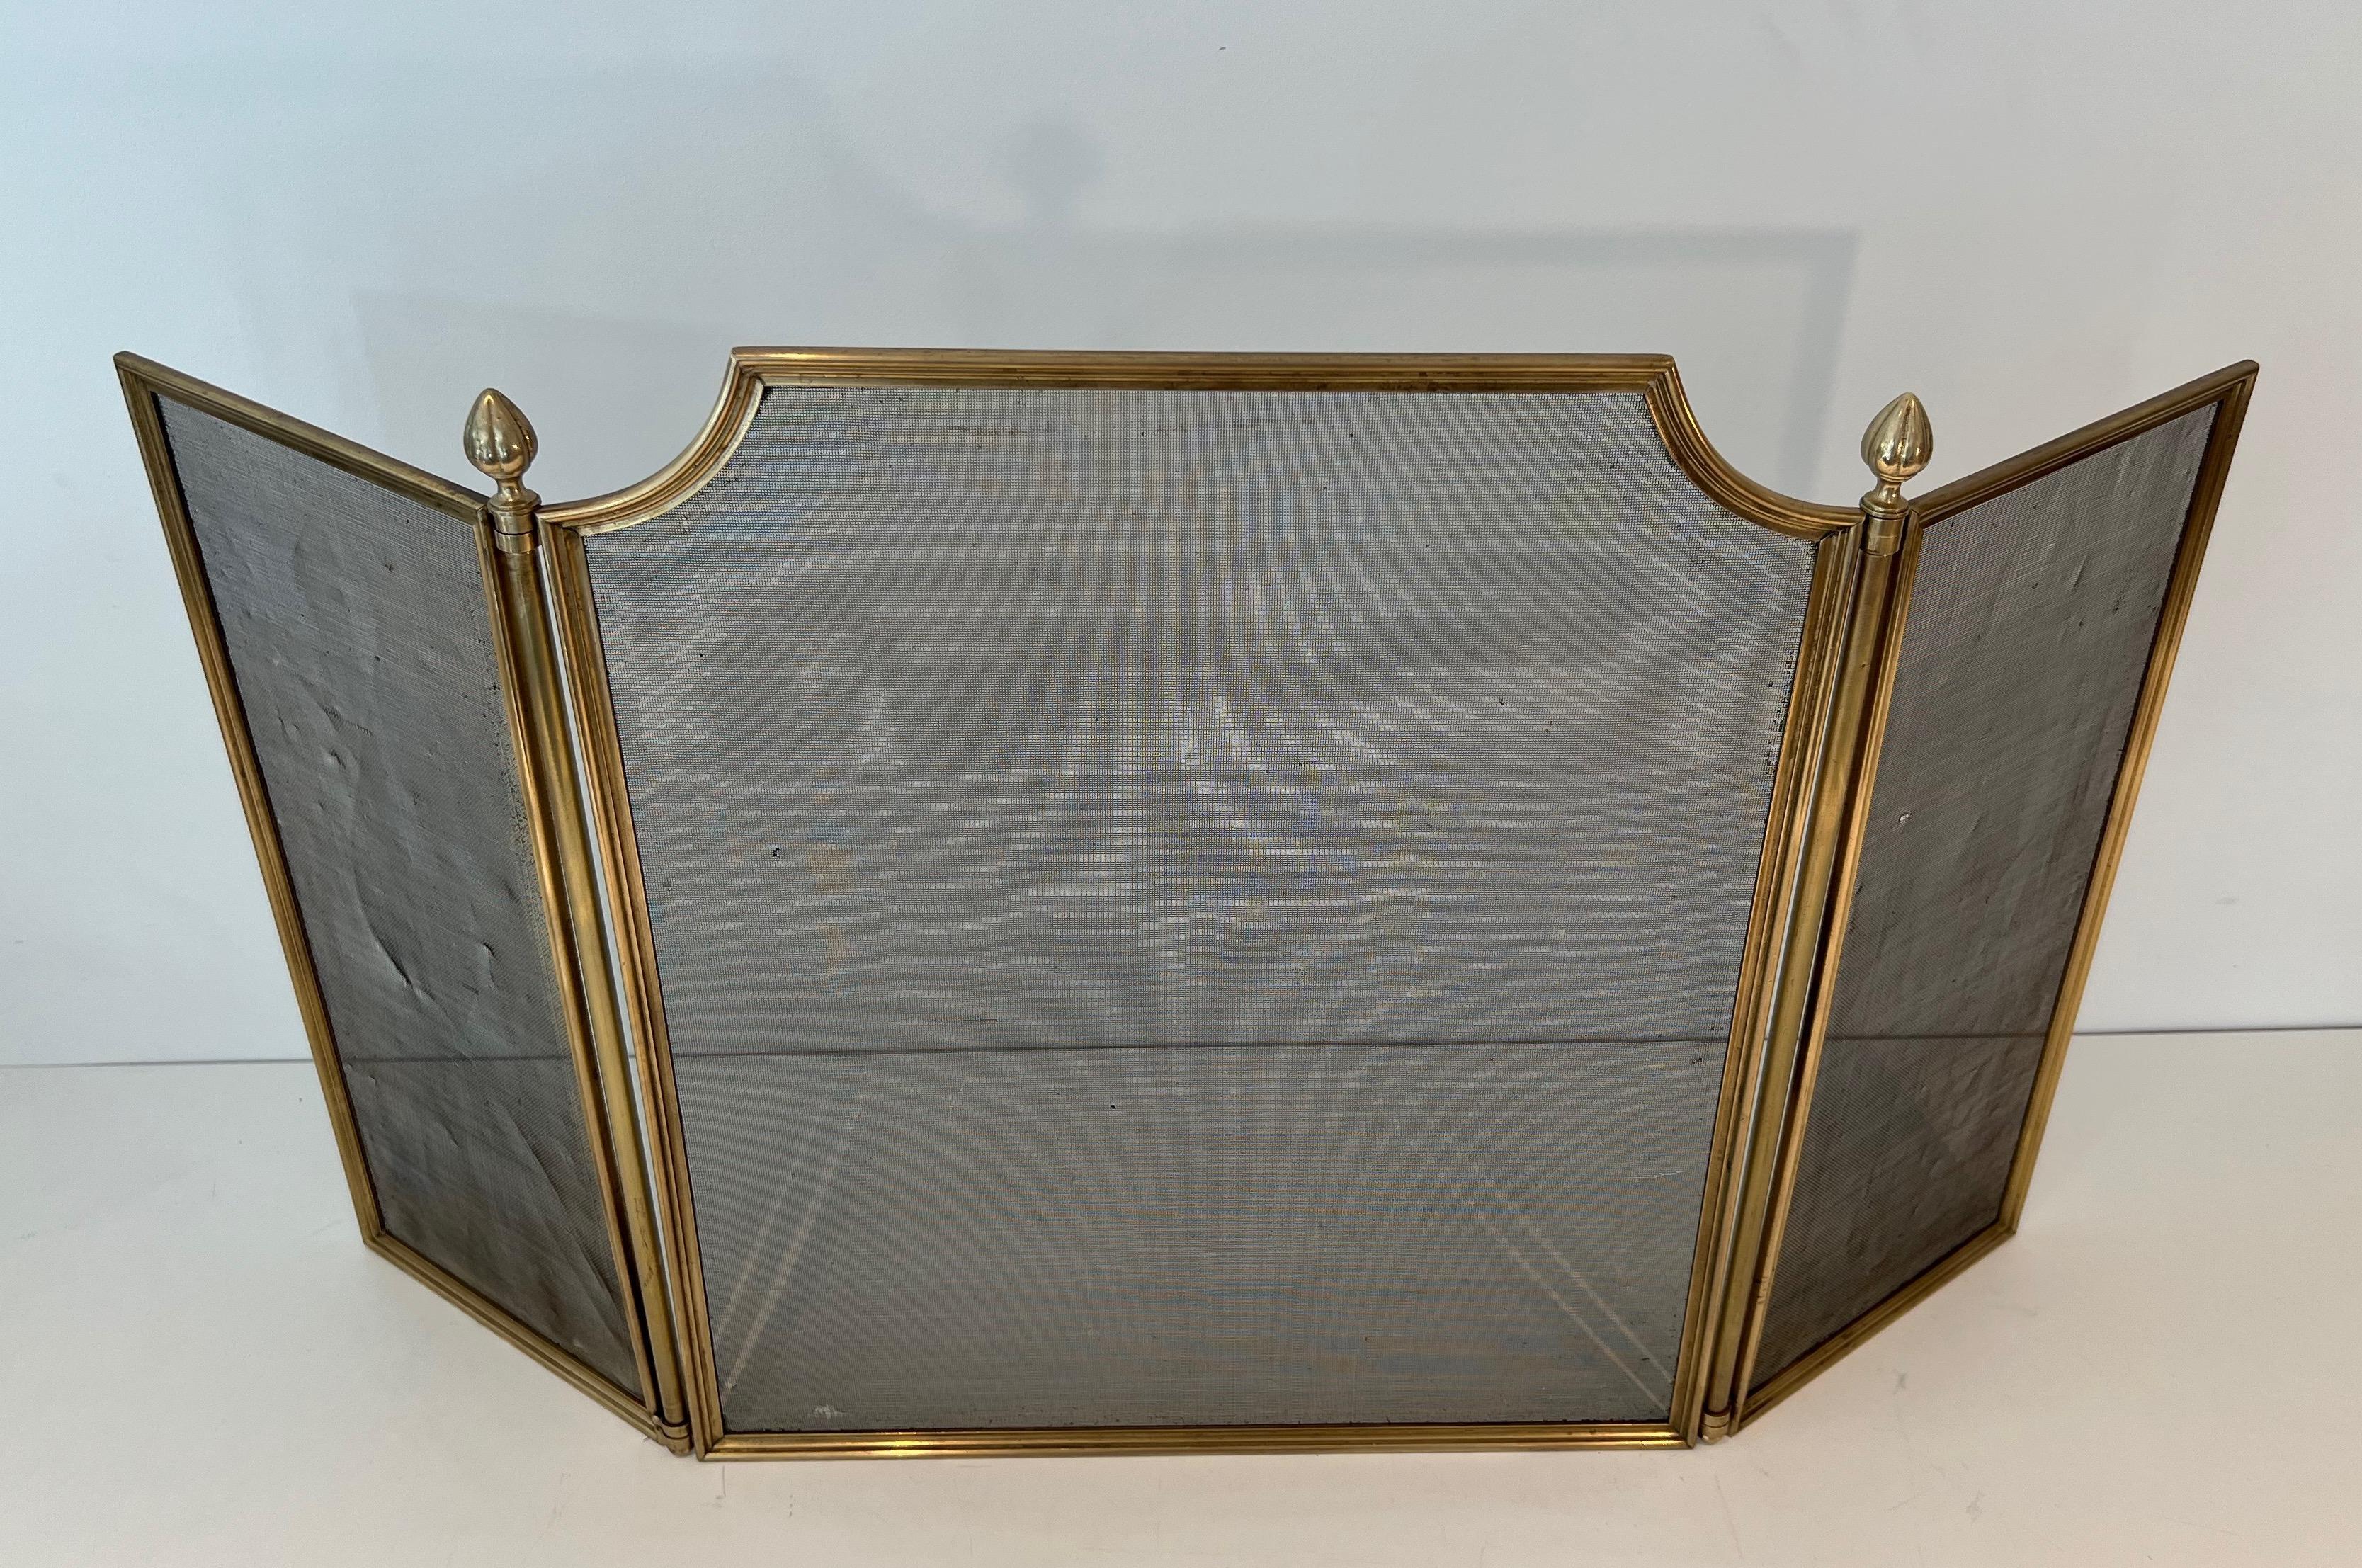 Dieser Kaminschirm im neoklassischen Stil mit 3 Paneelen ist aus gebürstetem Stahl, Messing und Gitter gefertigt. Es handelt sich um ein französisches Werk im Stil von Maison Jansen. CIRCA 1970